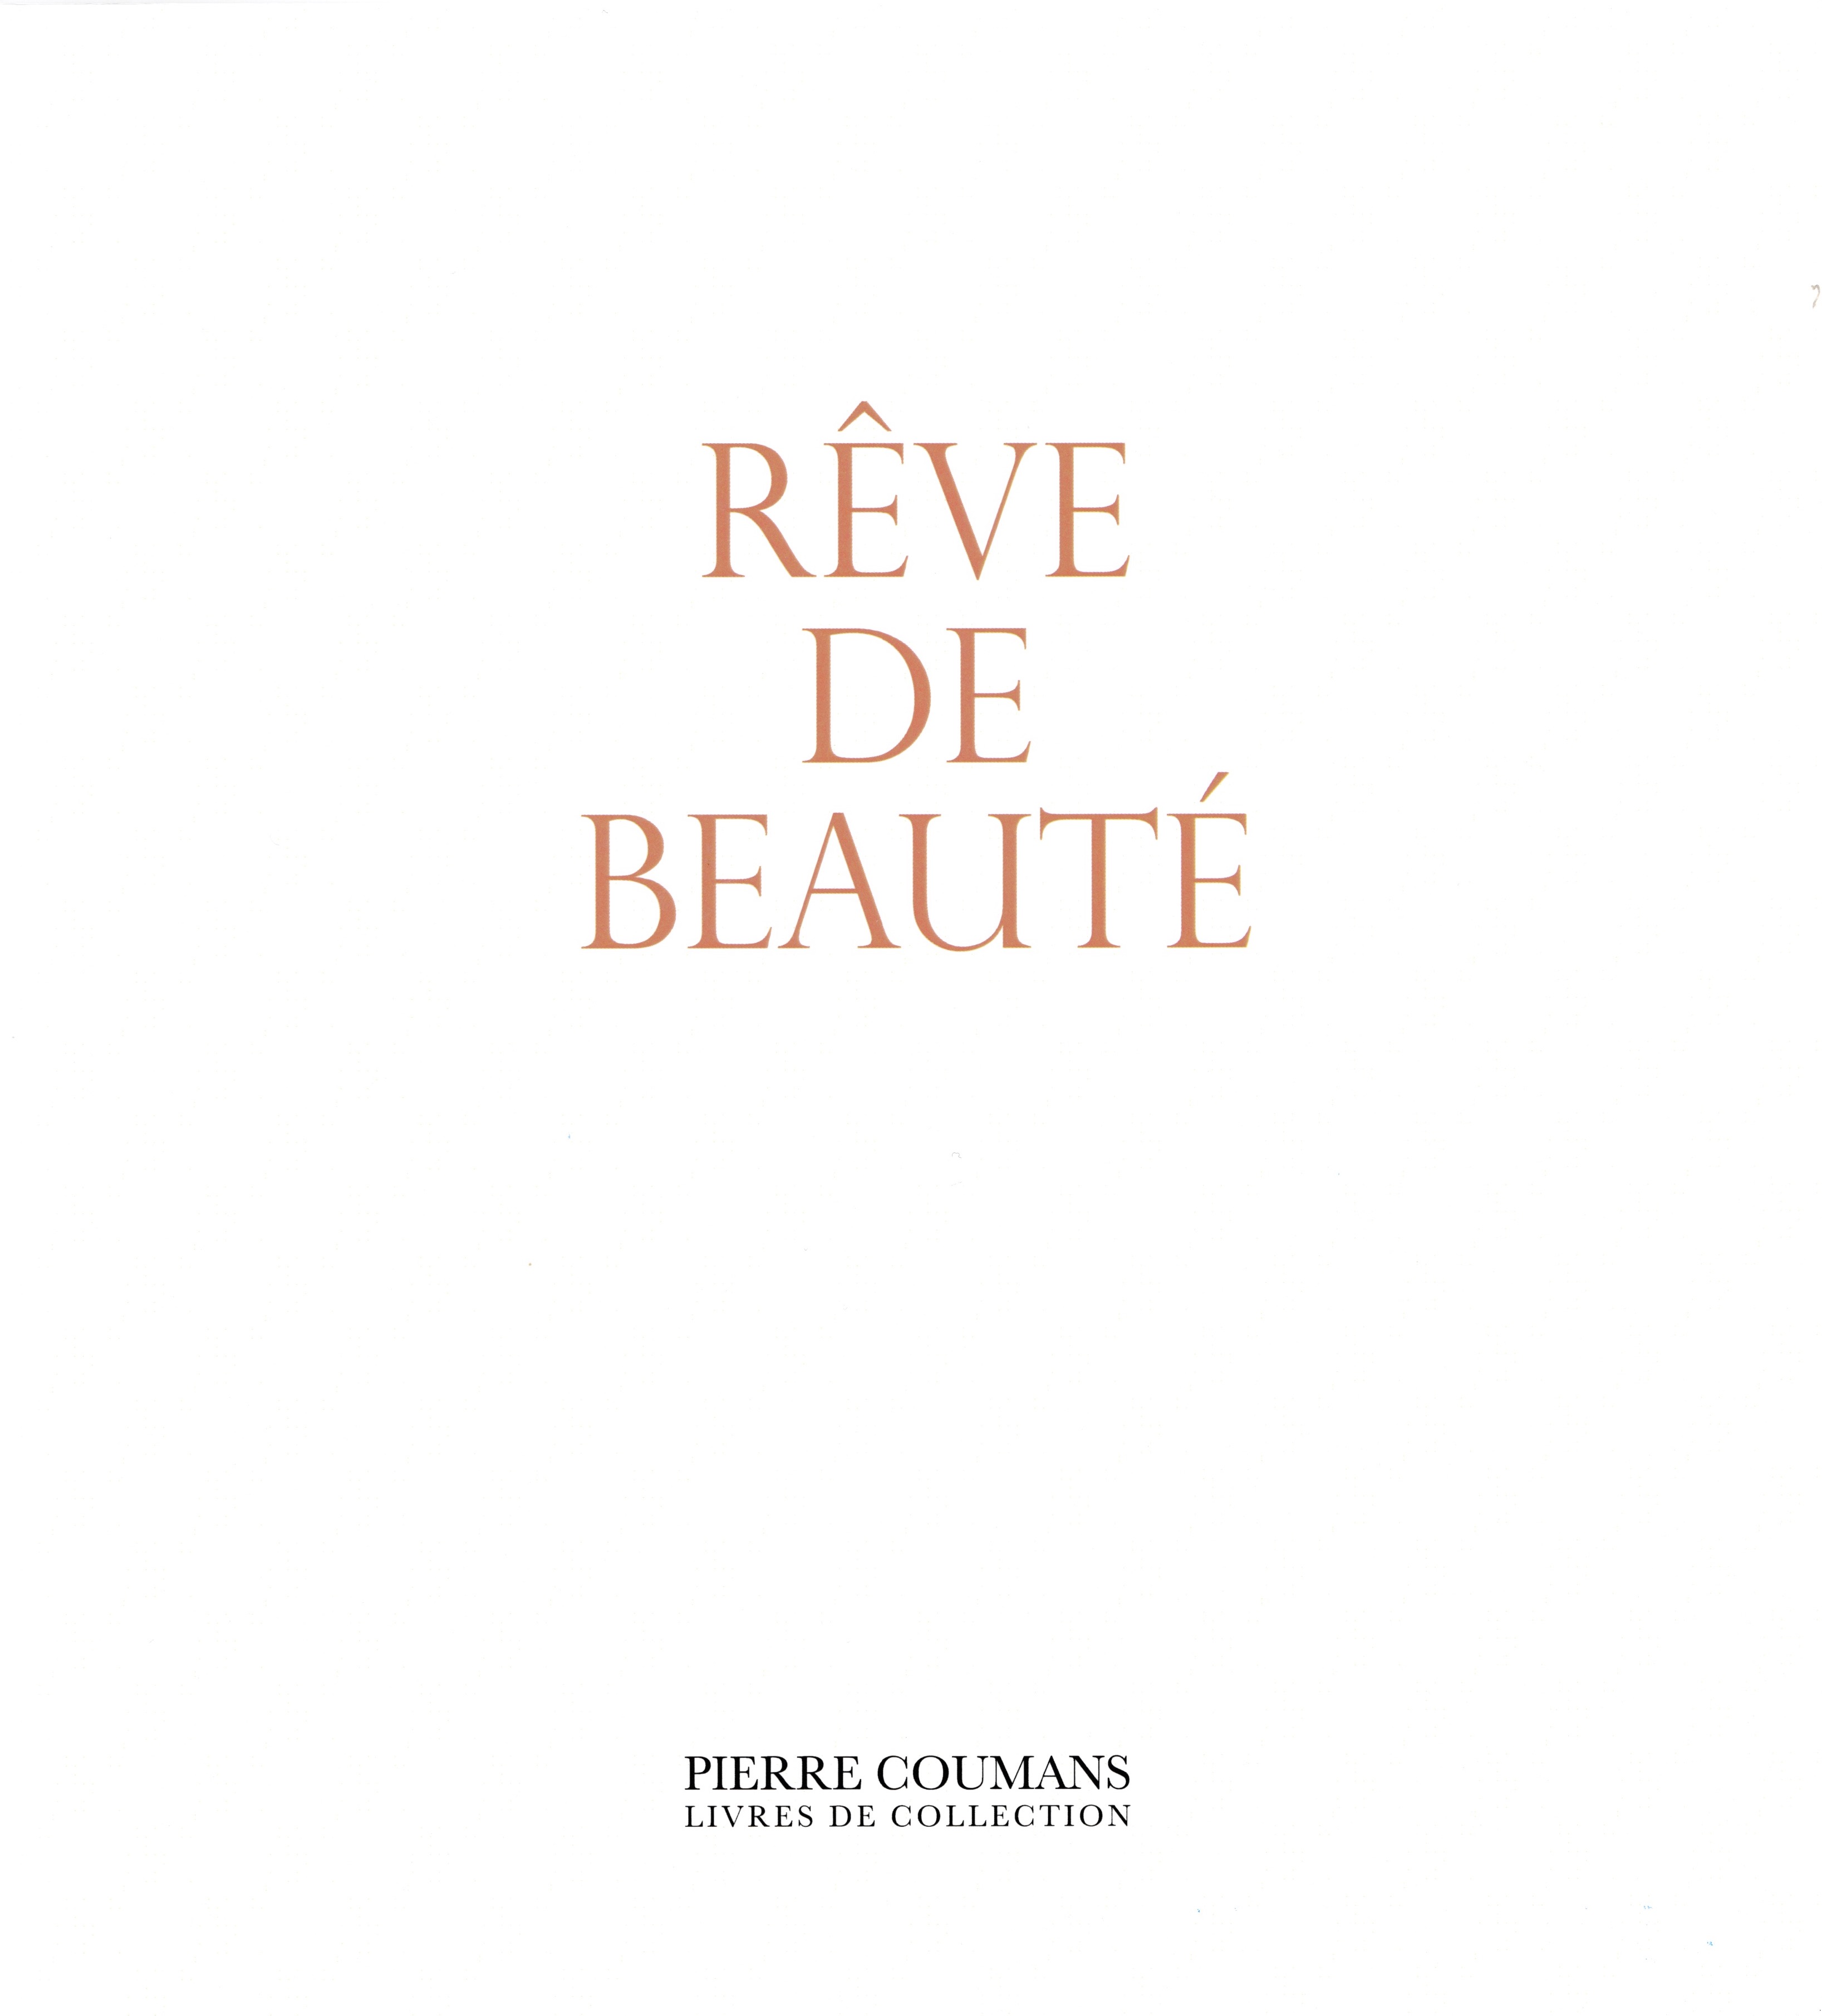 Catalogue of Librairie Pierre Coumans